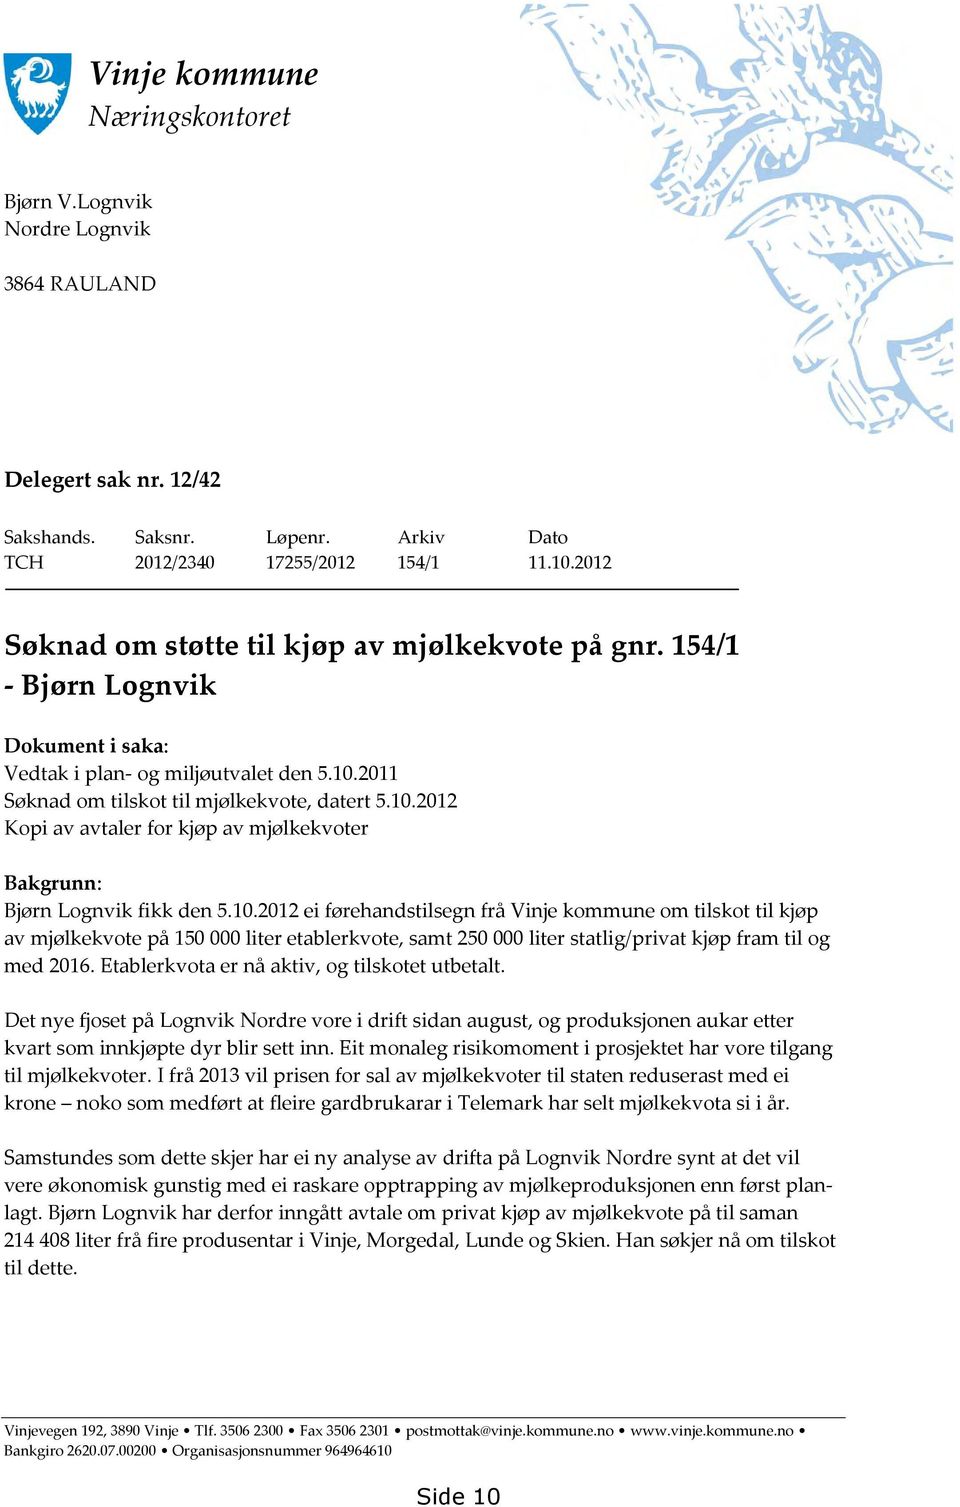 2011 Søknad om tilskot til mjølkekvote, datert 5.10.